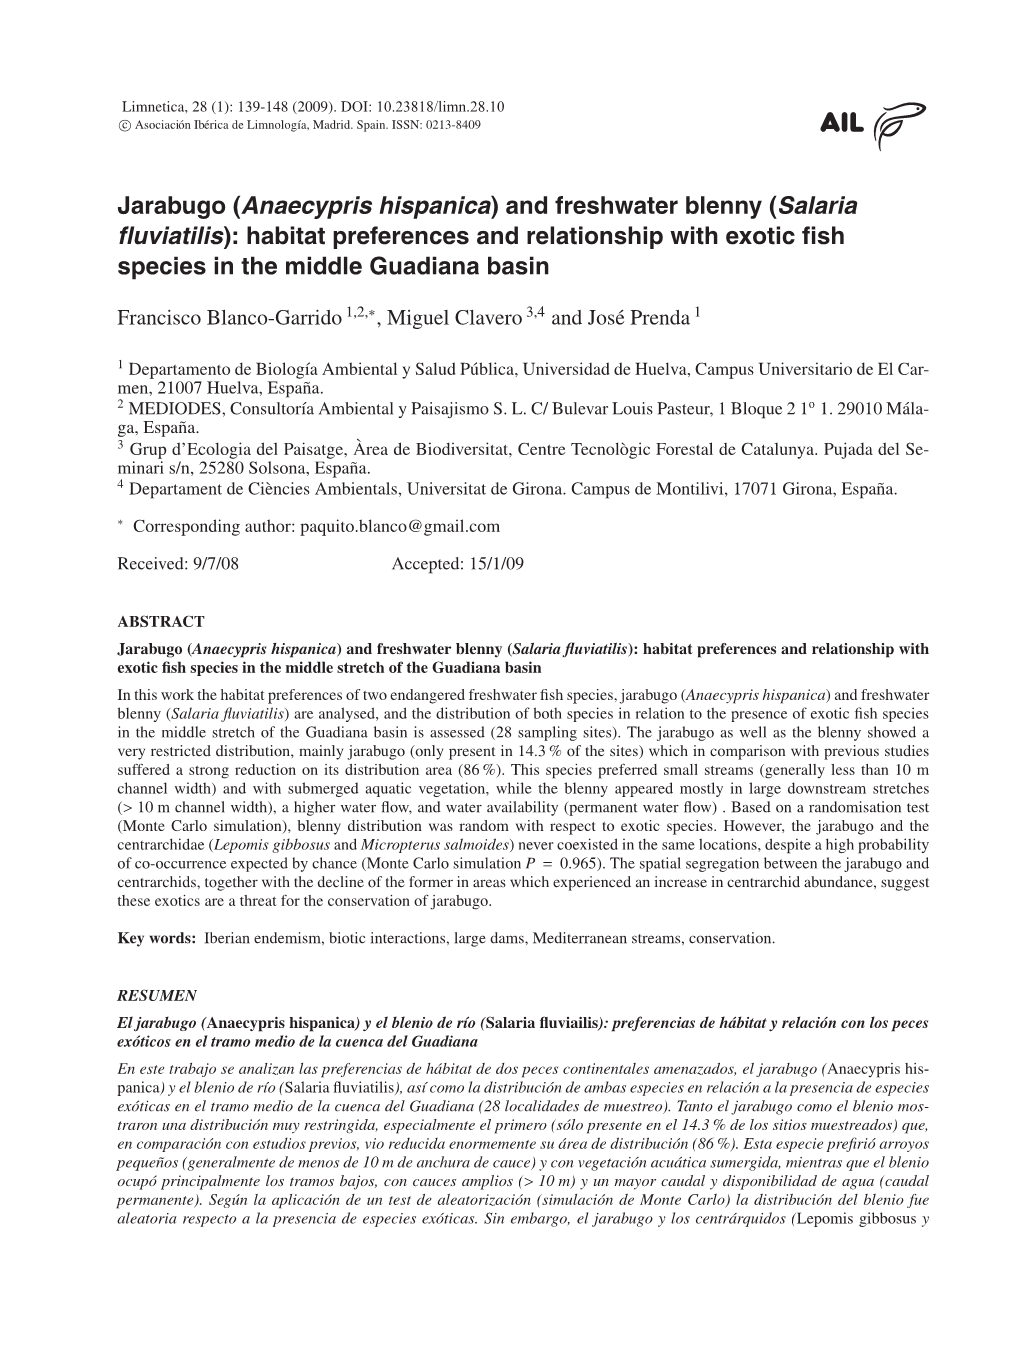 Jarabugo (Anaecypris Hispanica) and Freshwater Blenny (Salaria Fluviatilis